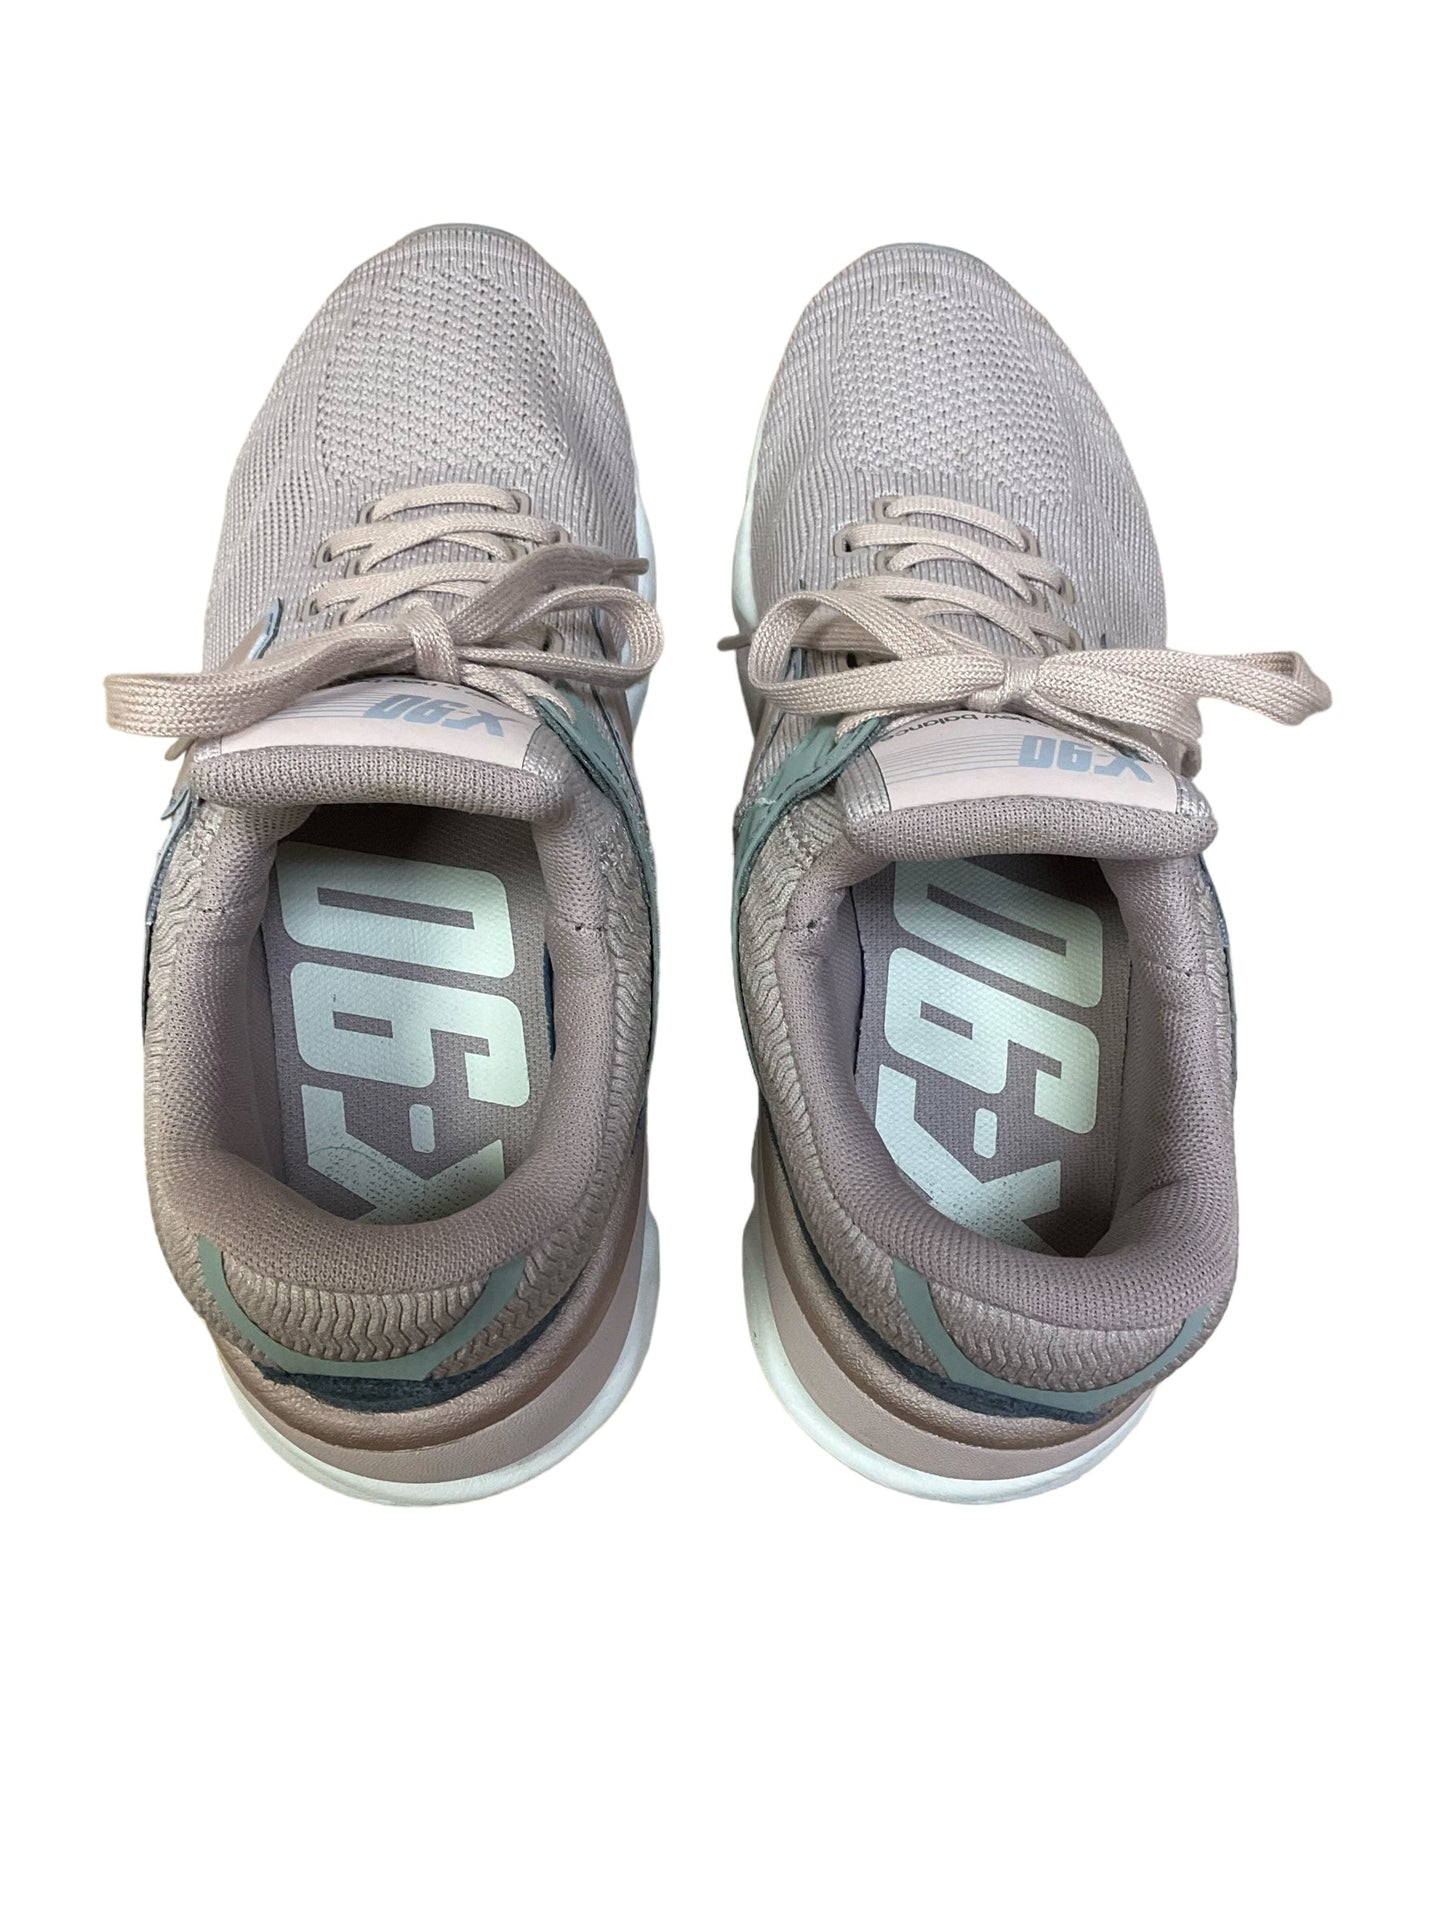 Mauve Shoes Athletic New Balance, Size 8